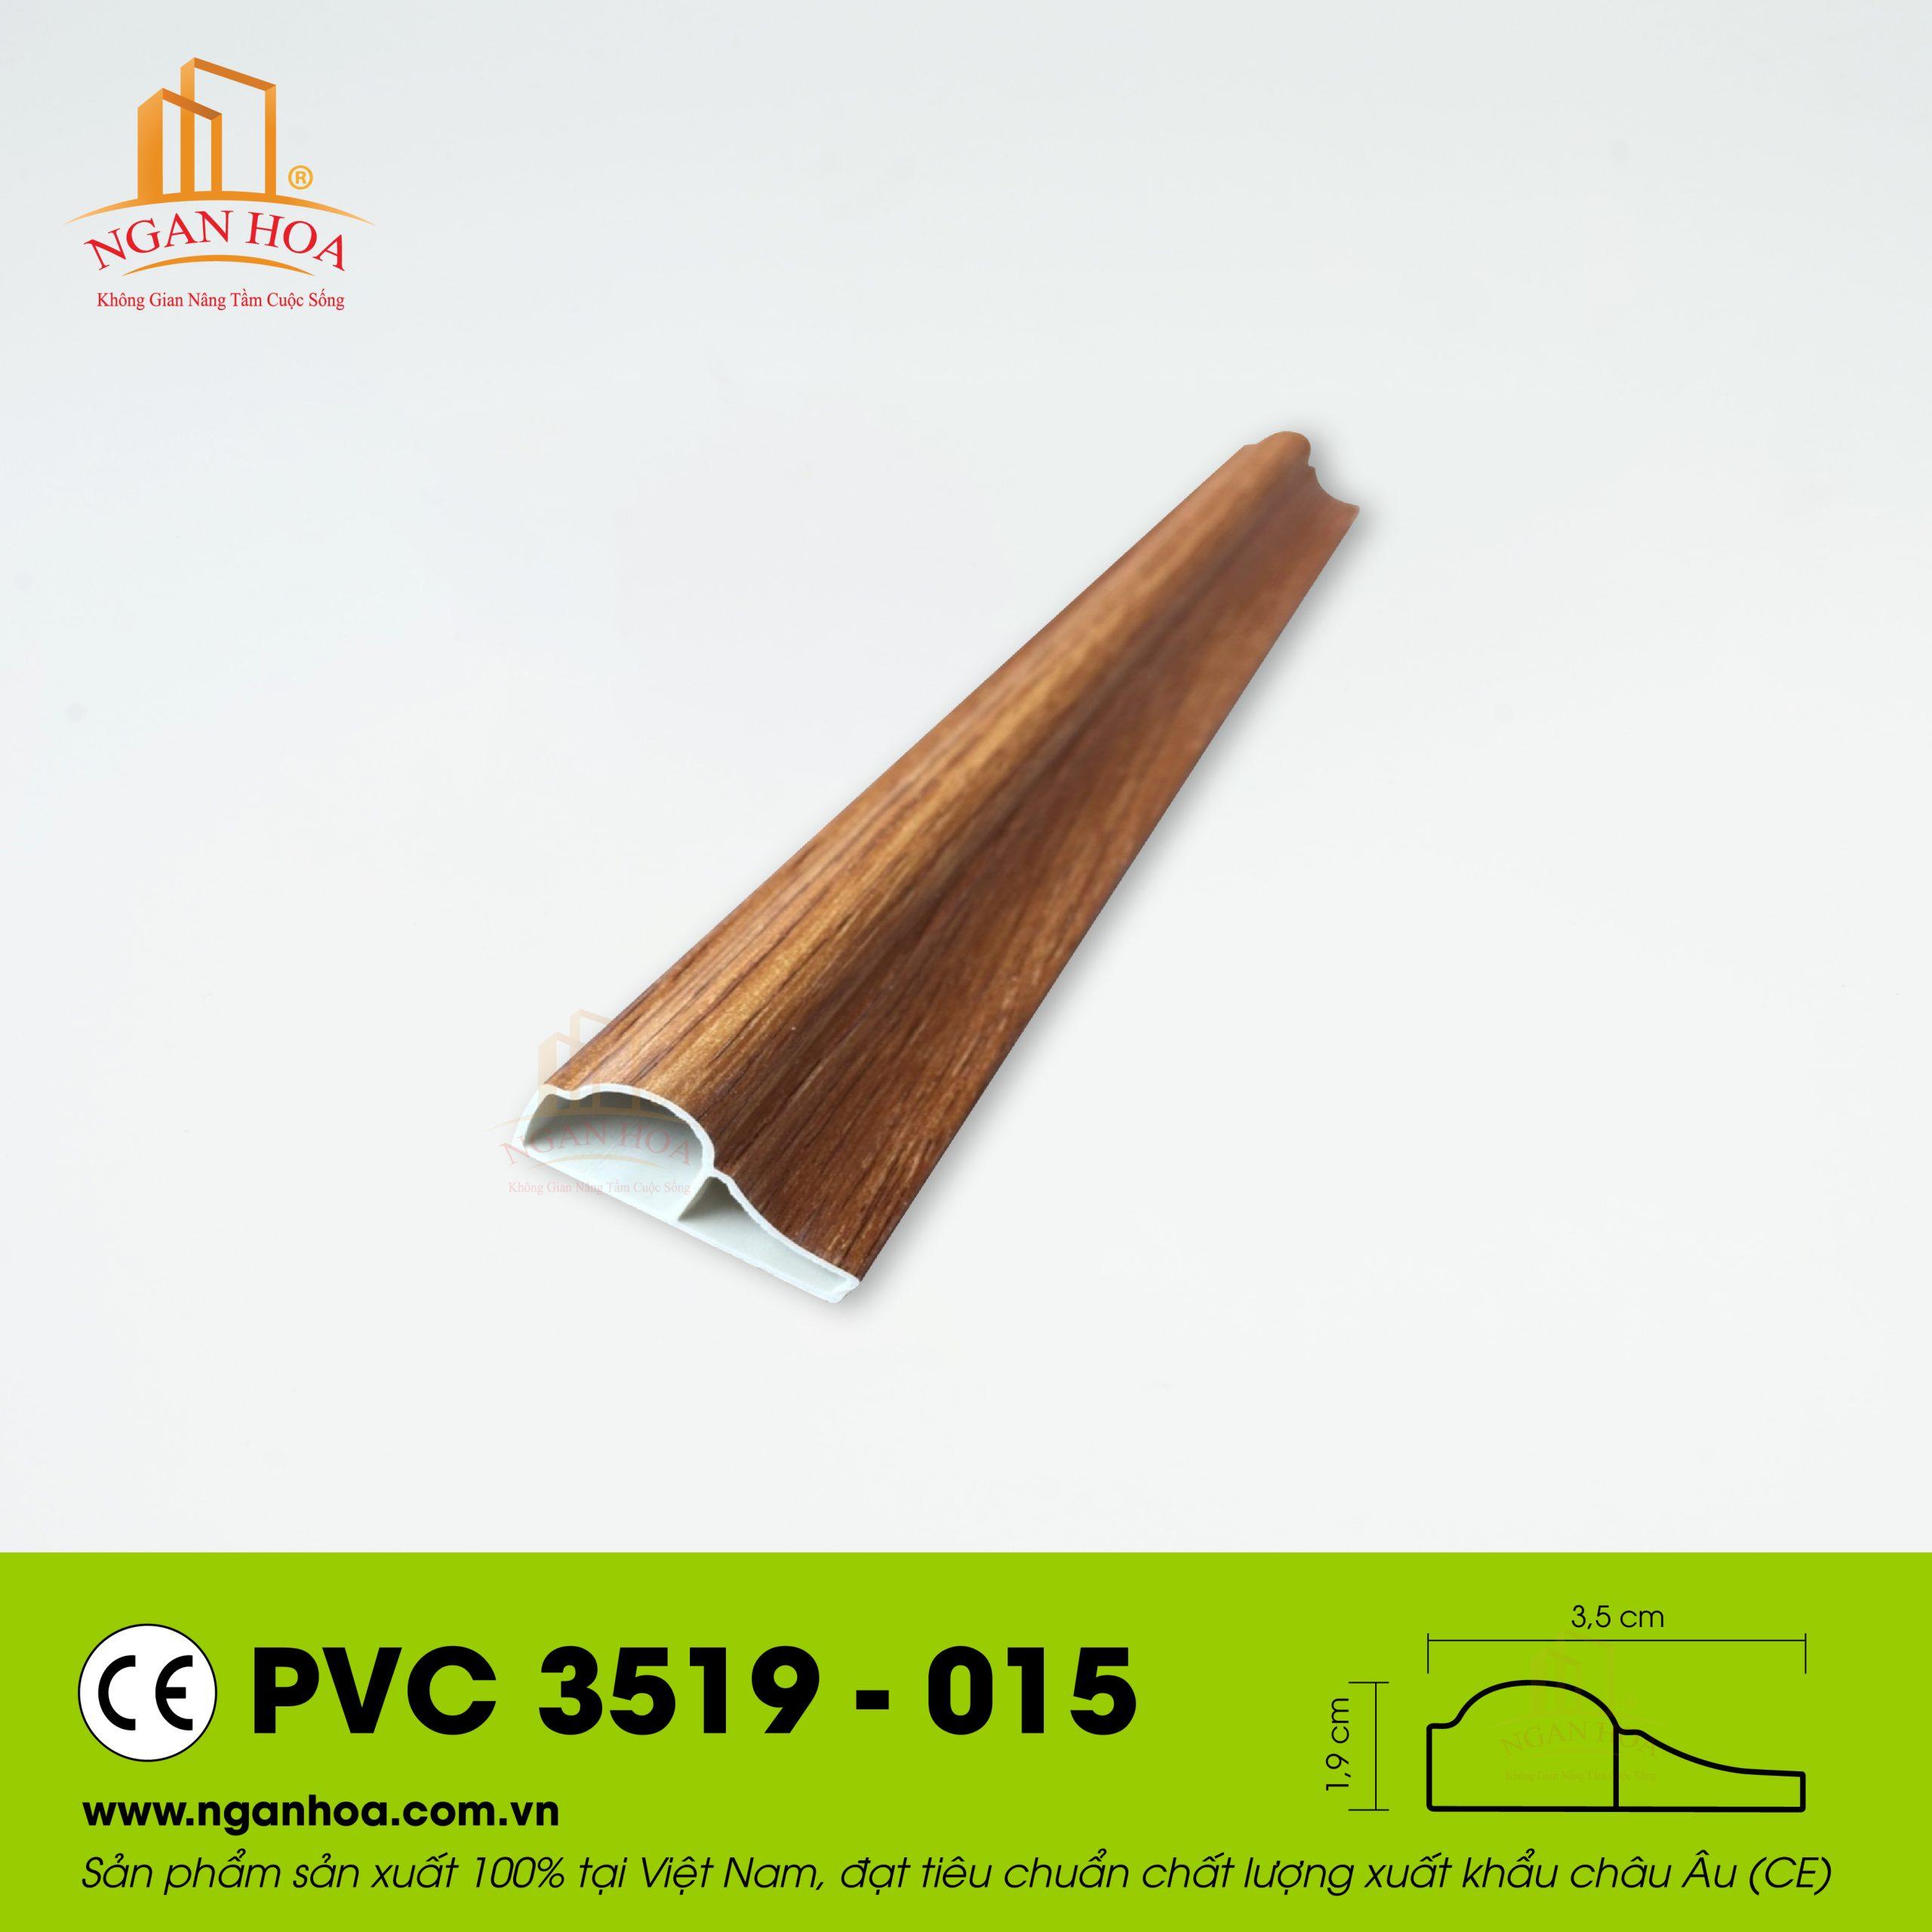 PVC 3519 015 scaled